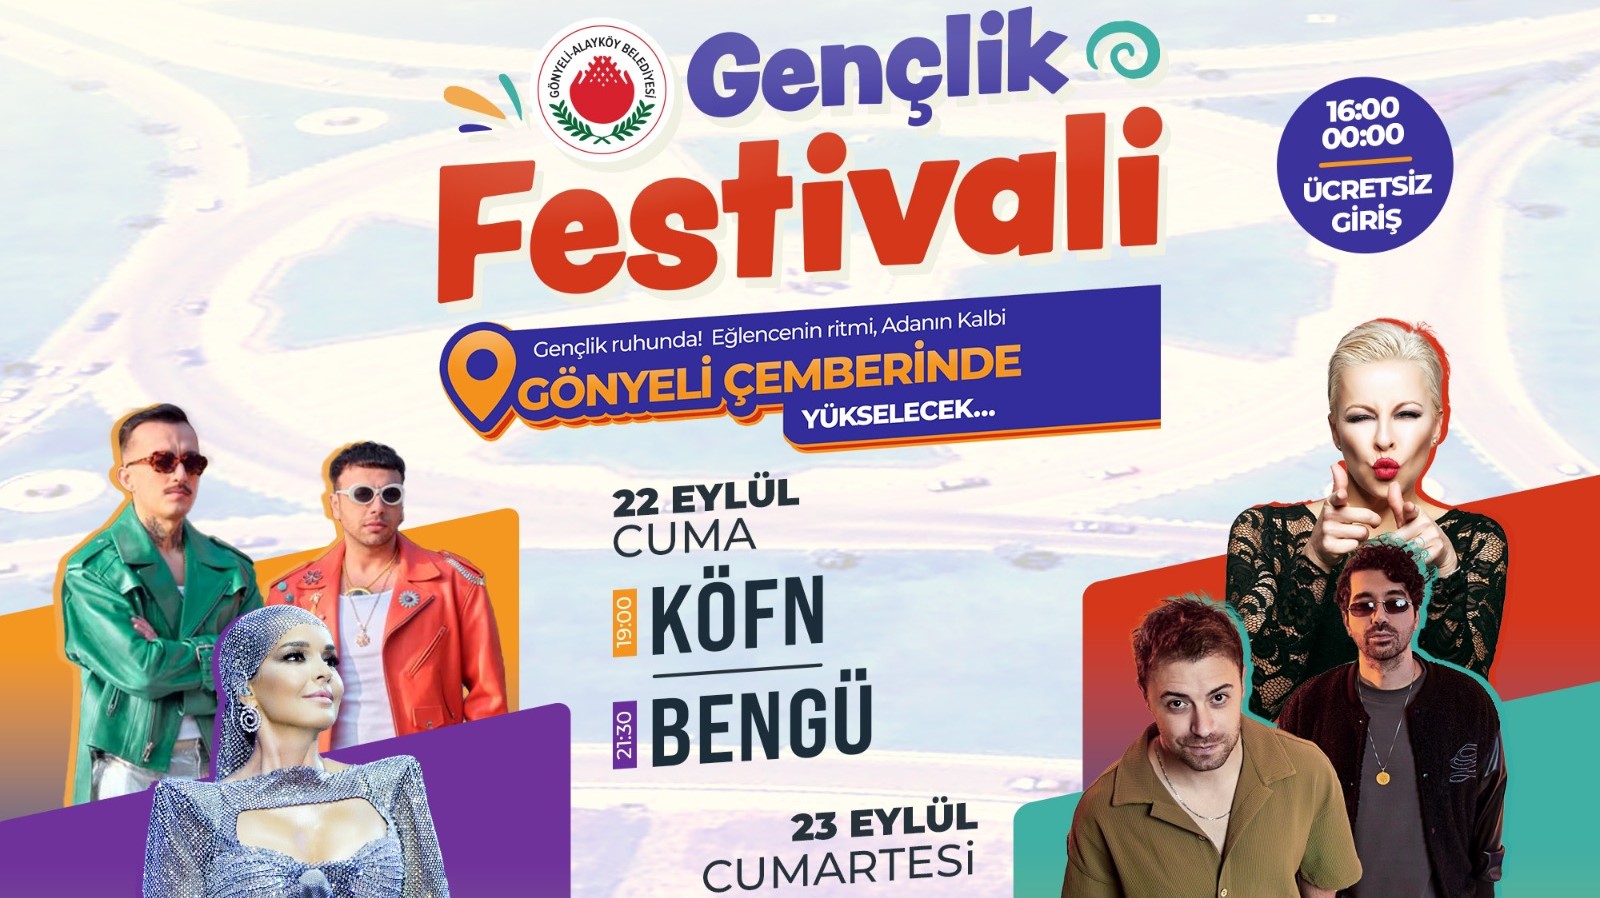 Gönyeli-Alayköy Gençlik Festivali bu yıl adanın kalbinde: Gönyeli Çemberi’nde (Concorde Otel önü çim alanda) 